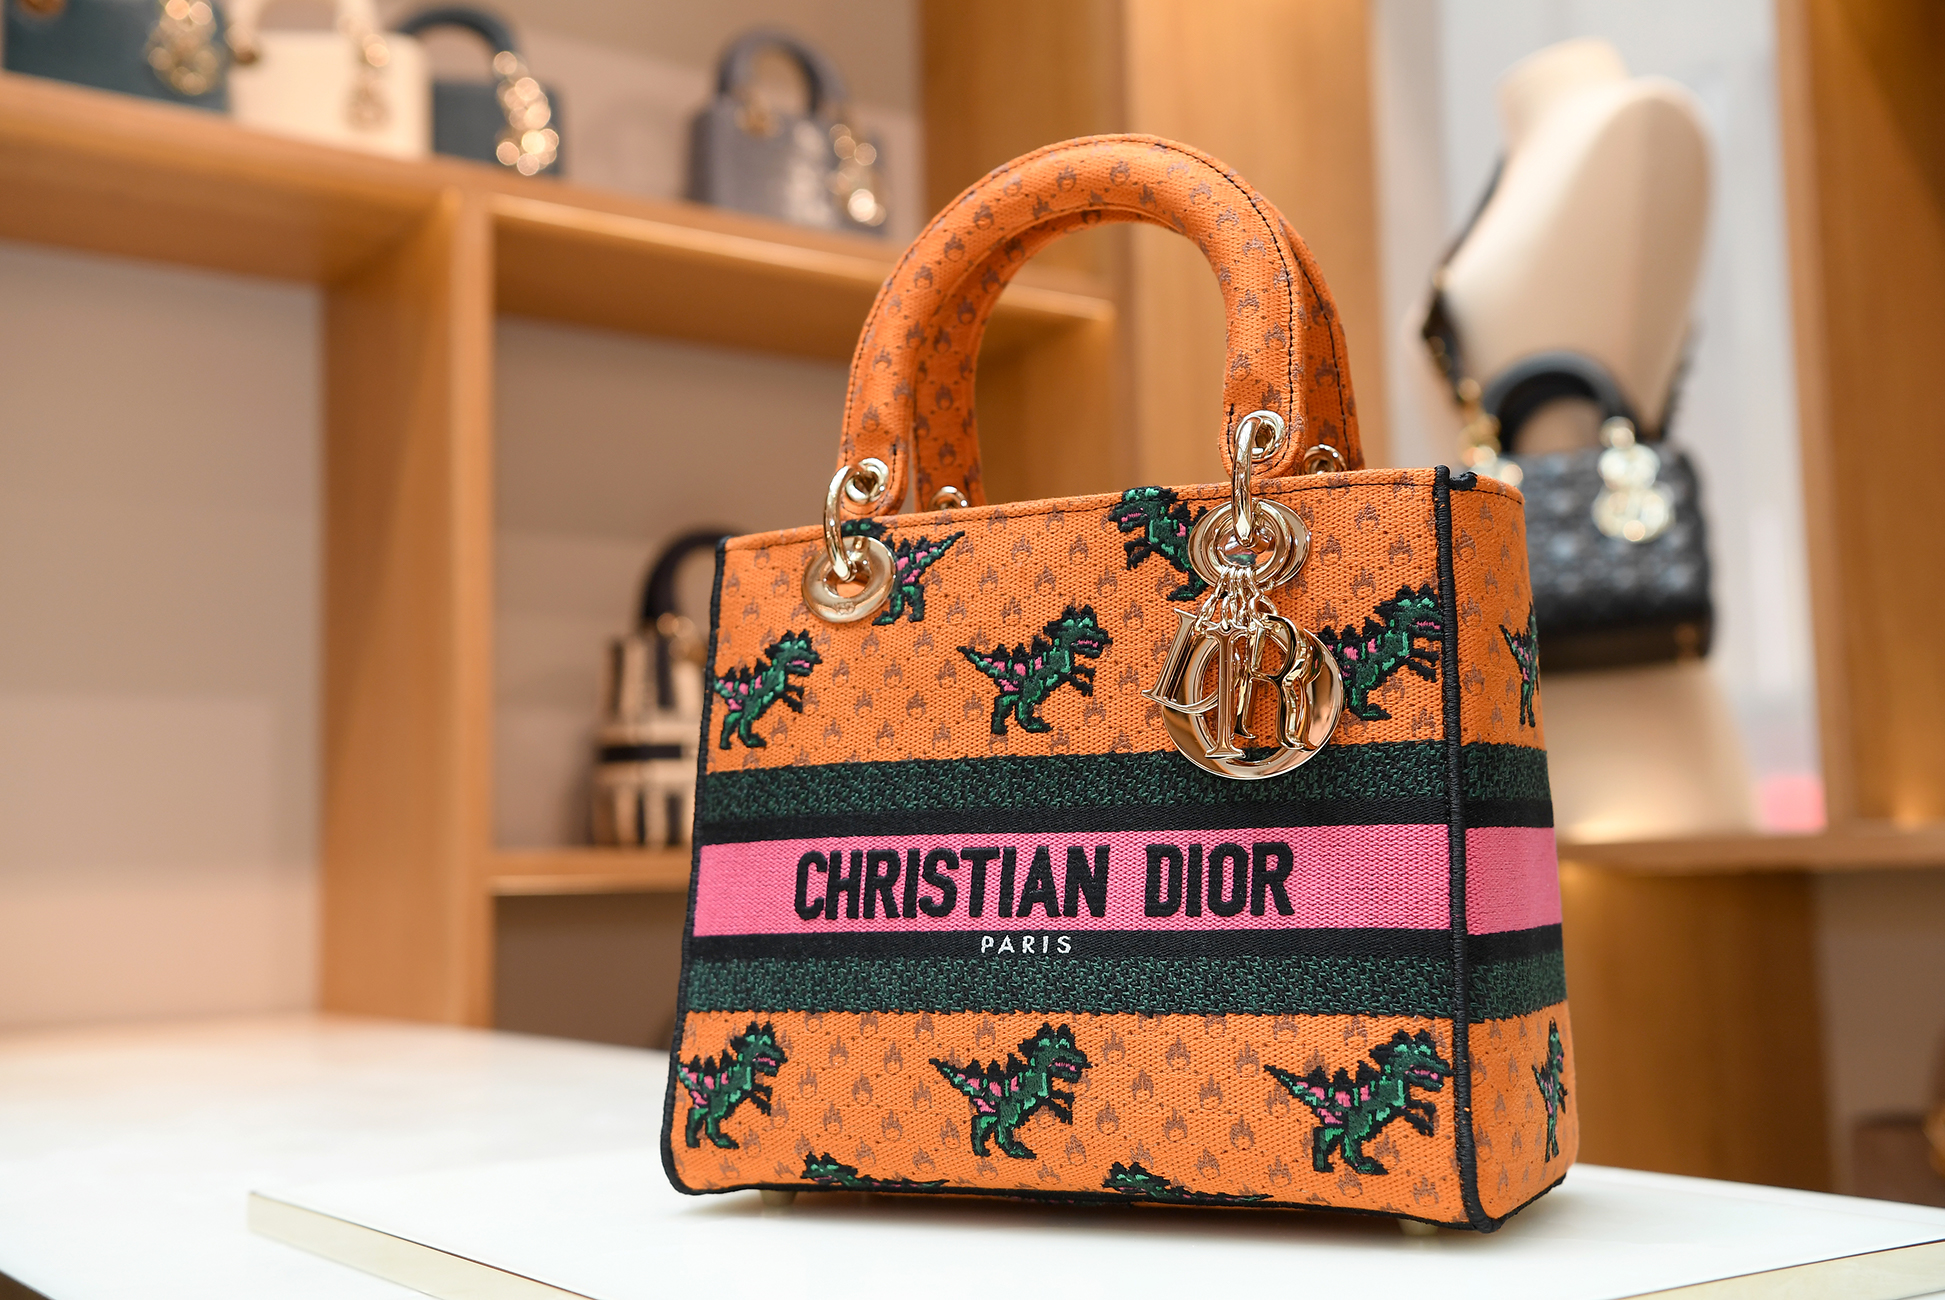 Dior的經典藤格圖案！Lady Dior系列如何詮釋品牌的美學精髓？